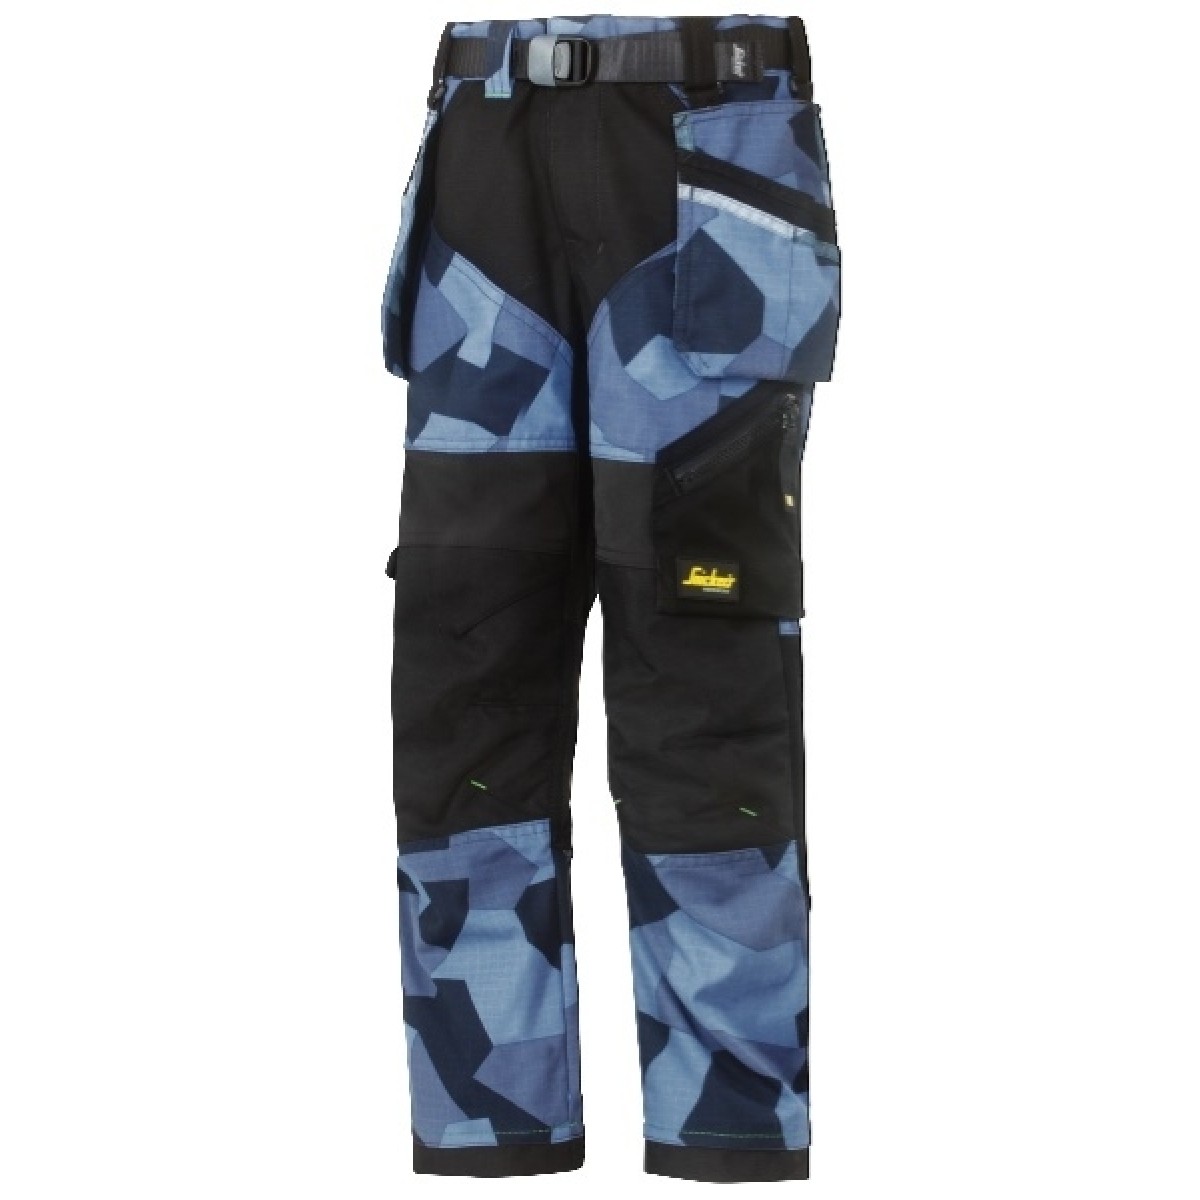 Snickers 75058604134 FlexiWork Pantalon pour Enfants Taille 134 Camouflage-Bleu Marine/Noir 